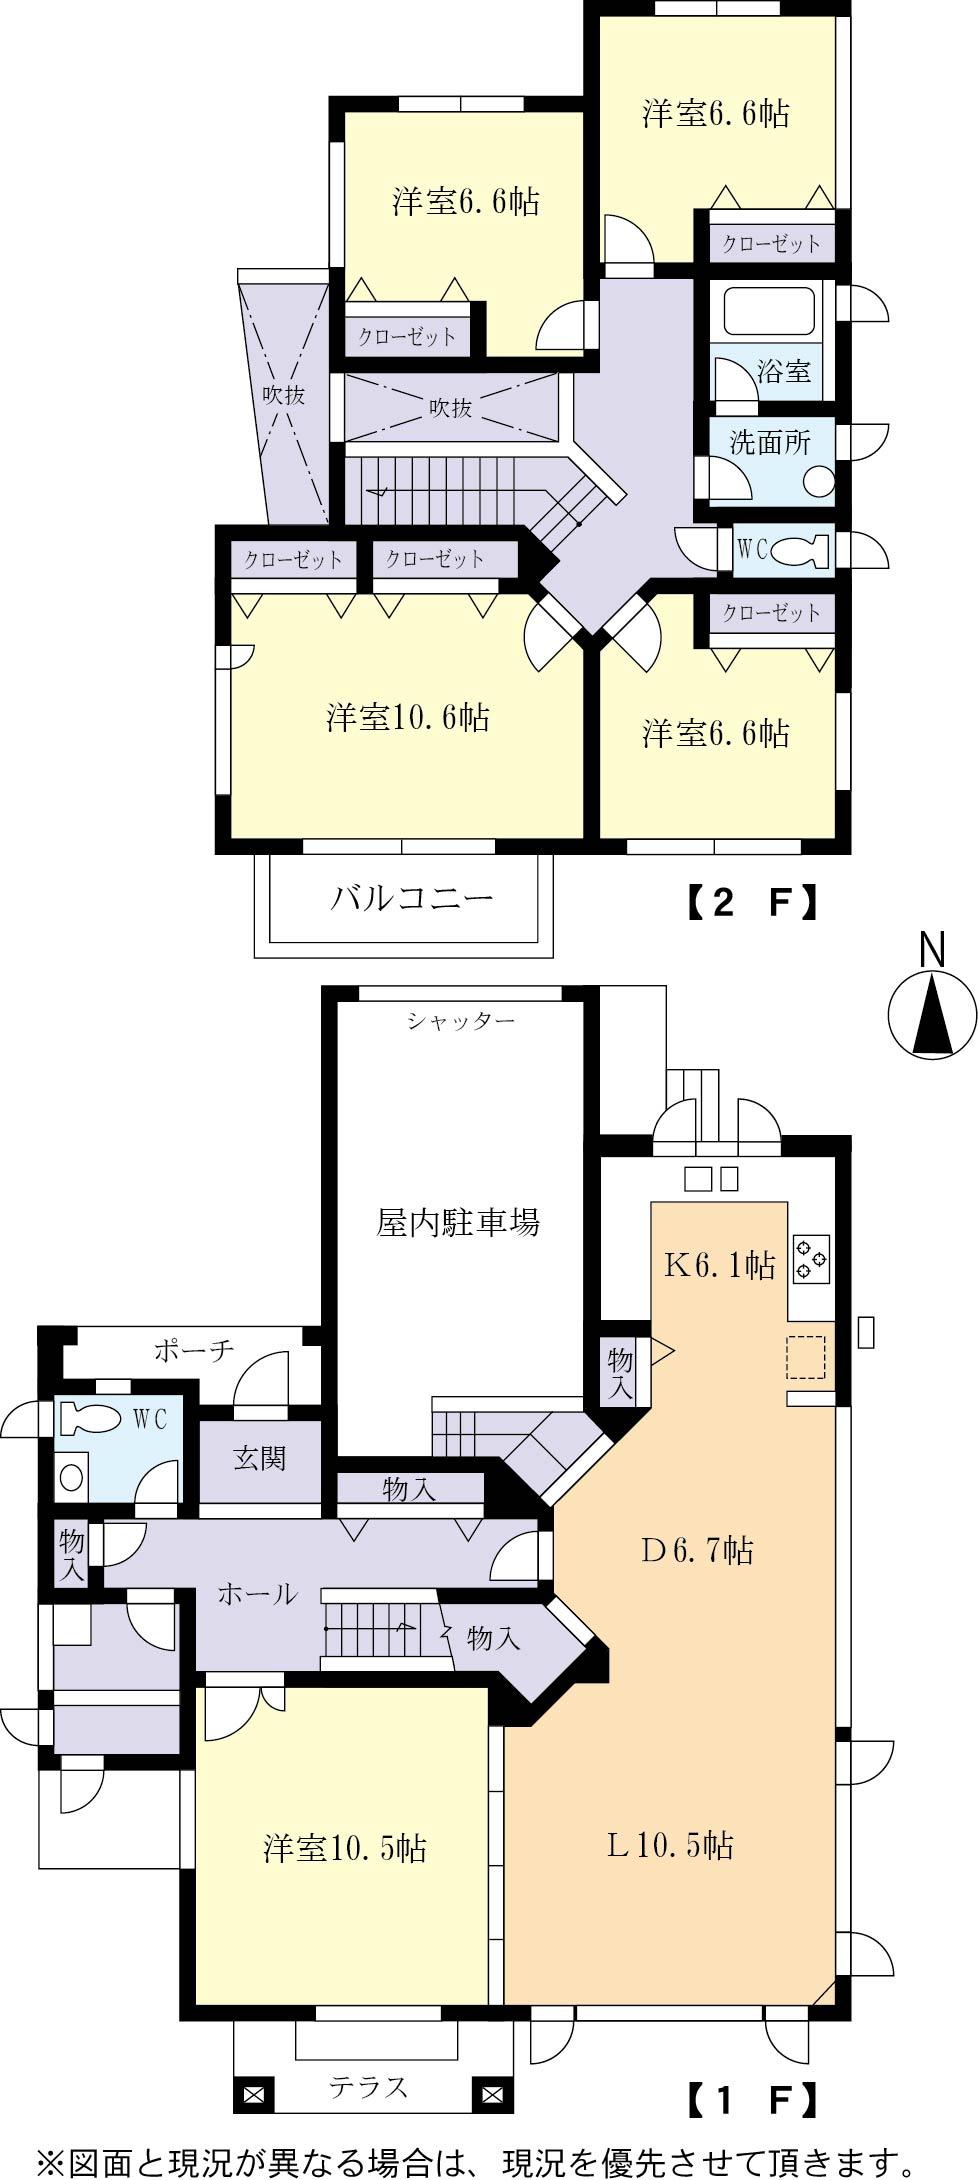 Floor plan. 23.8 million yen, 5LDK, Land area 230.02 sq m , Building area 173.92 sq m